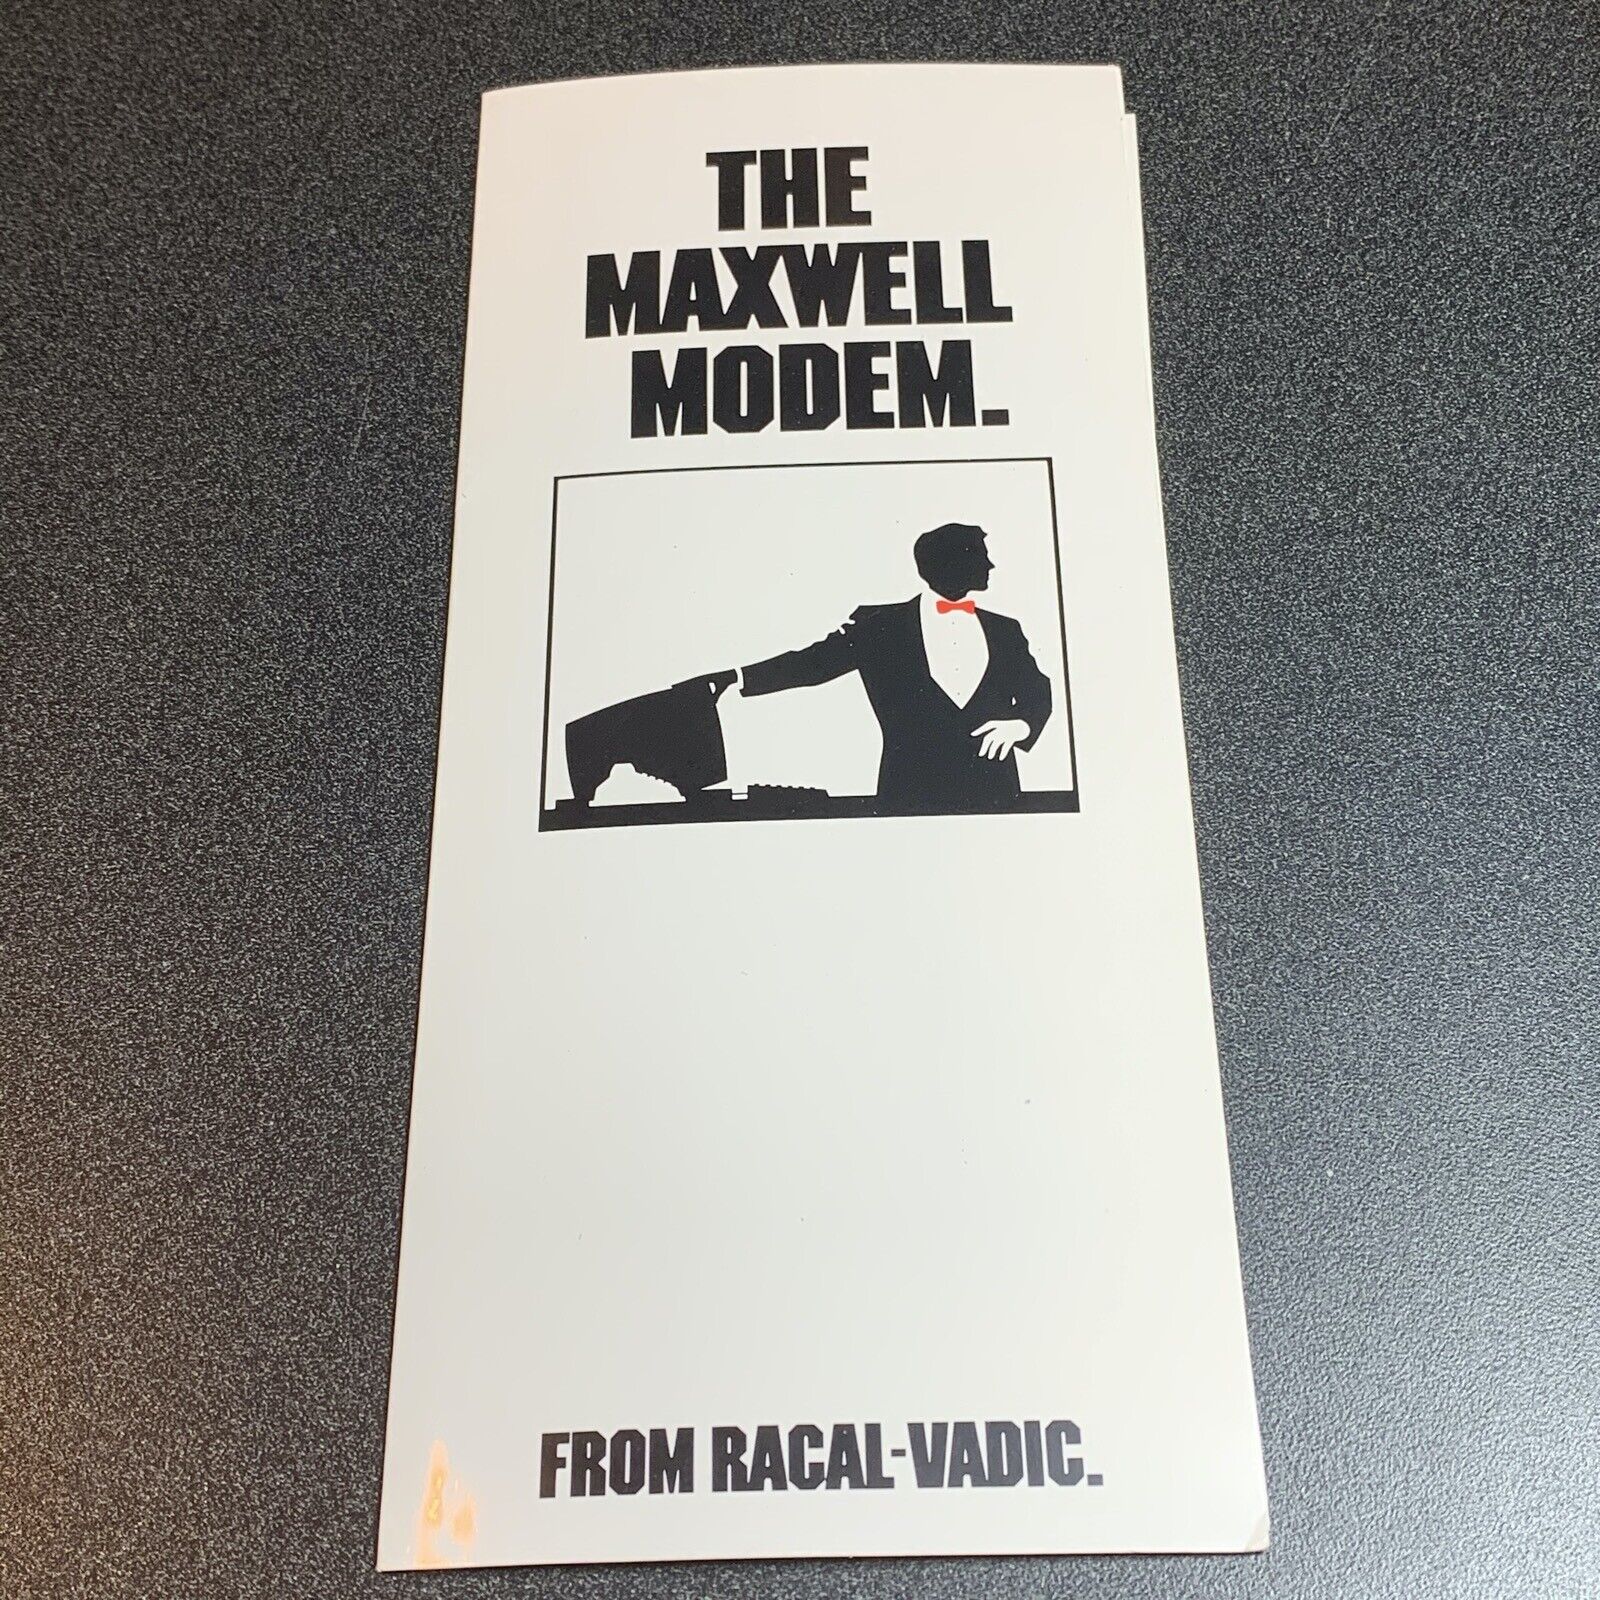 Maxwell Modem vintage computer sales brochure Racal-Vadic 300 1200 baud George